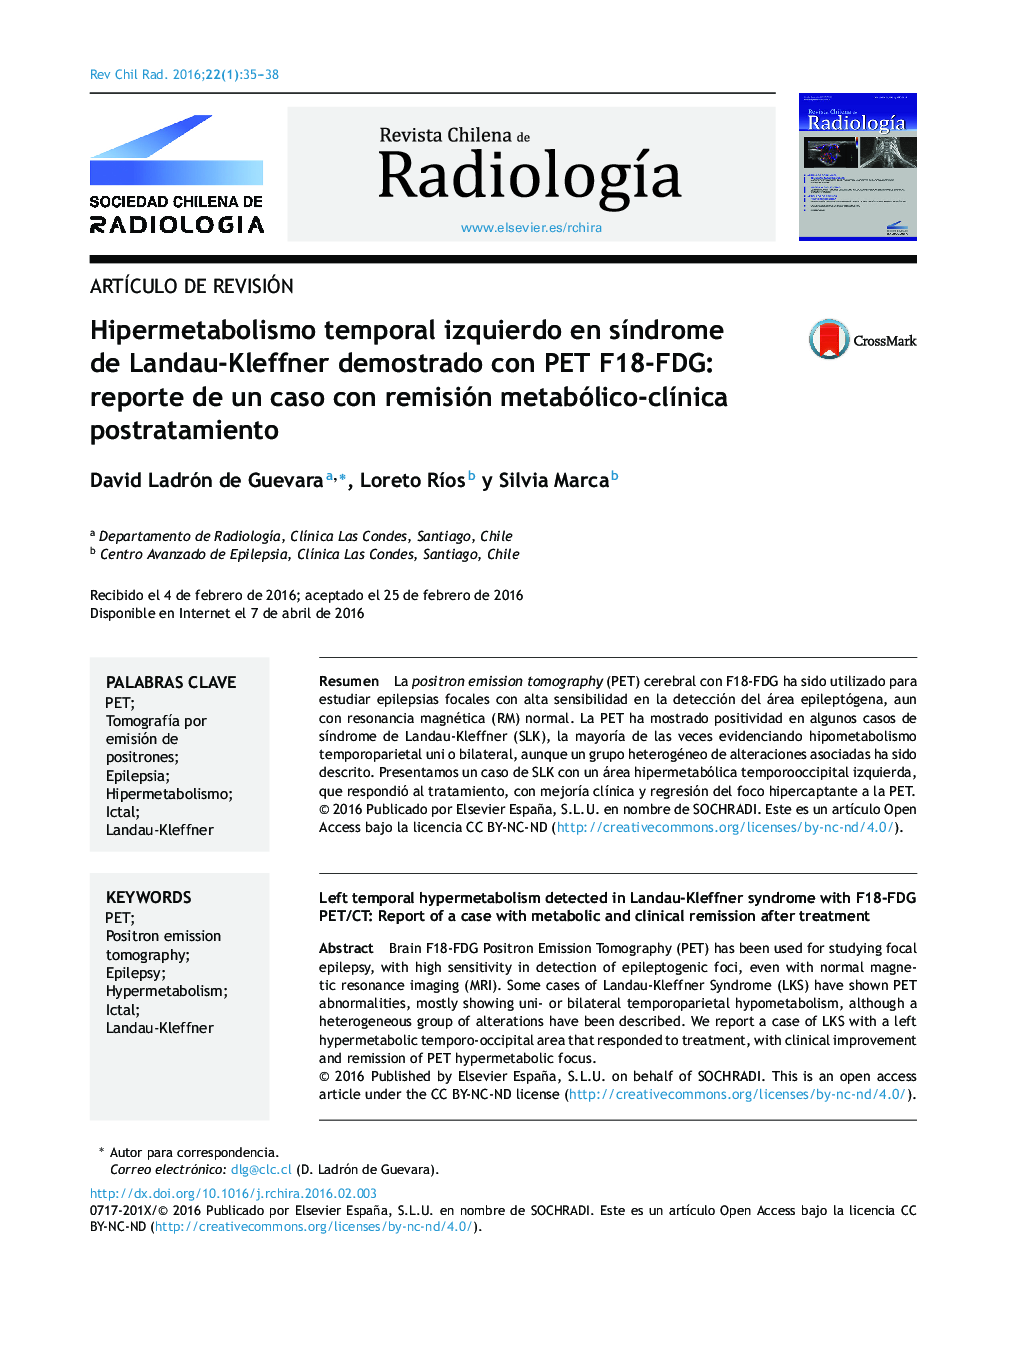 Hipermetabolismo temporal izquierdo en síndrome de Landau-Kleffner demostrado con PET F18-FDG: reporte de un caso con remisión metabólico-clínica postratamiento